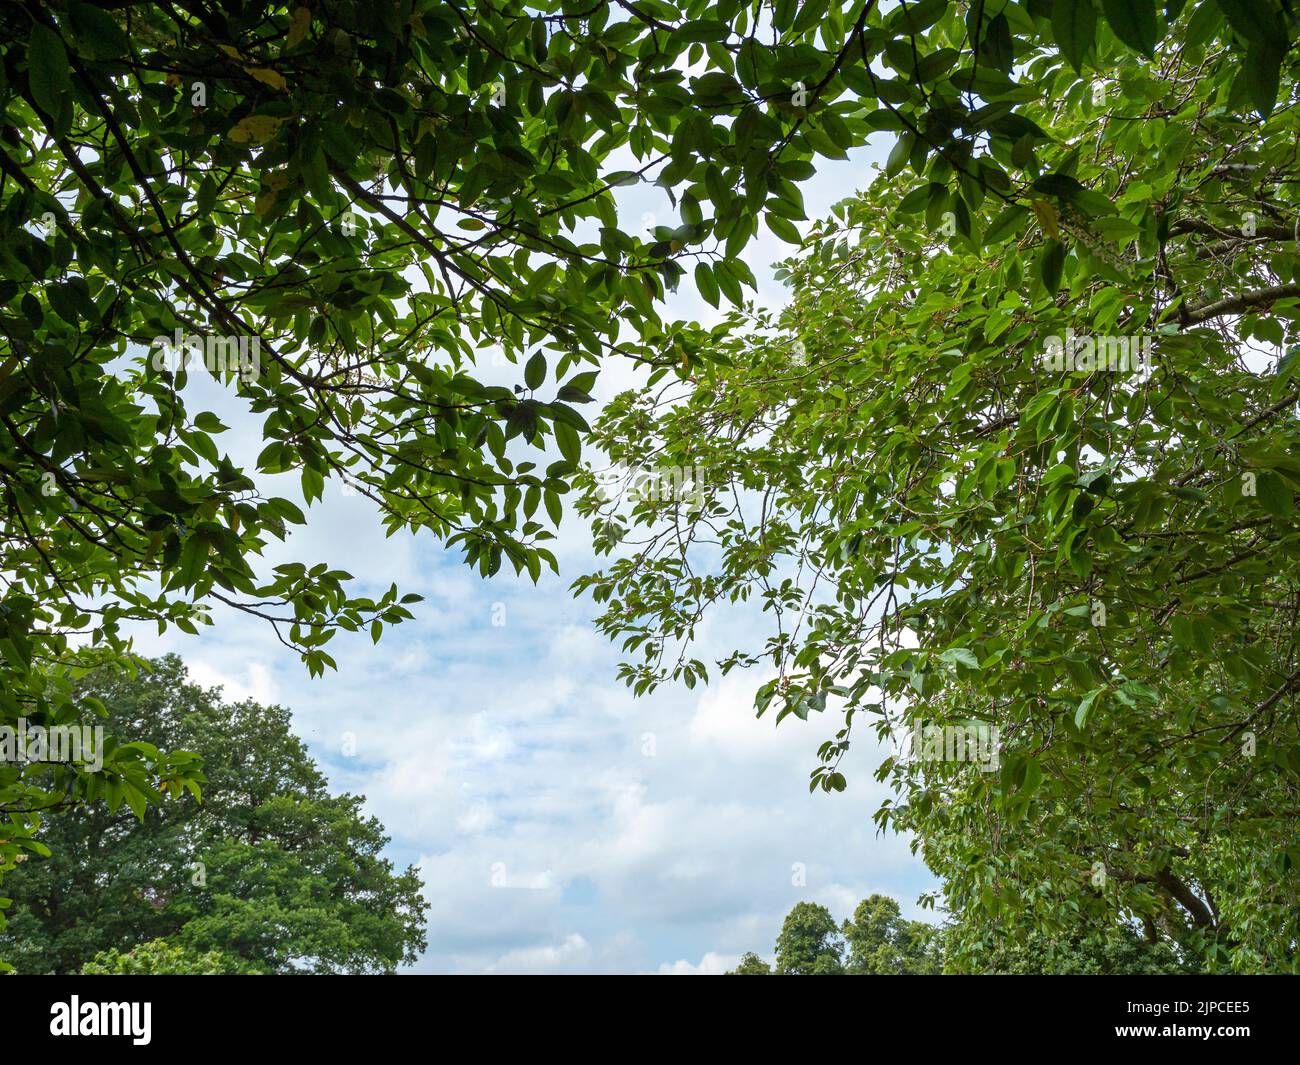 Blick durch grünes Laub zu einem wolkenblauen Sommerhimmel Stockfoto